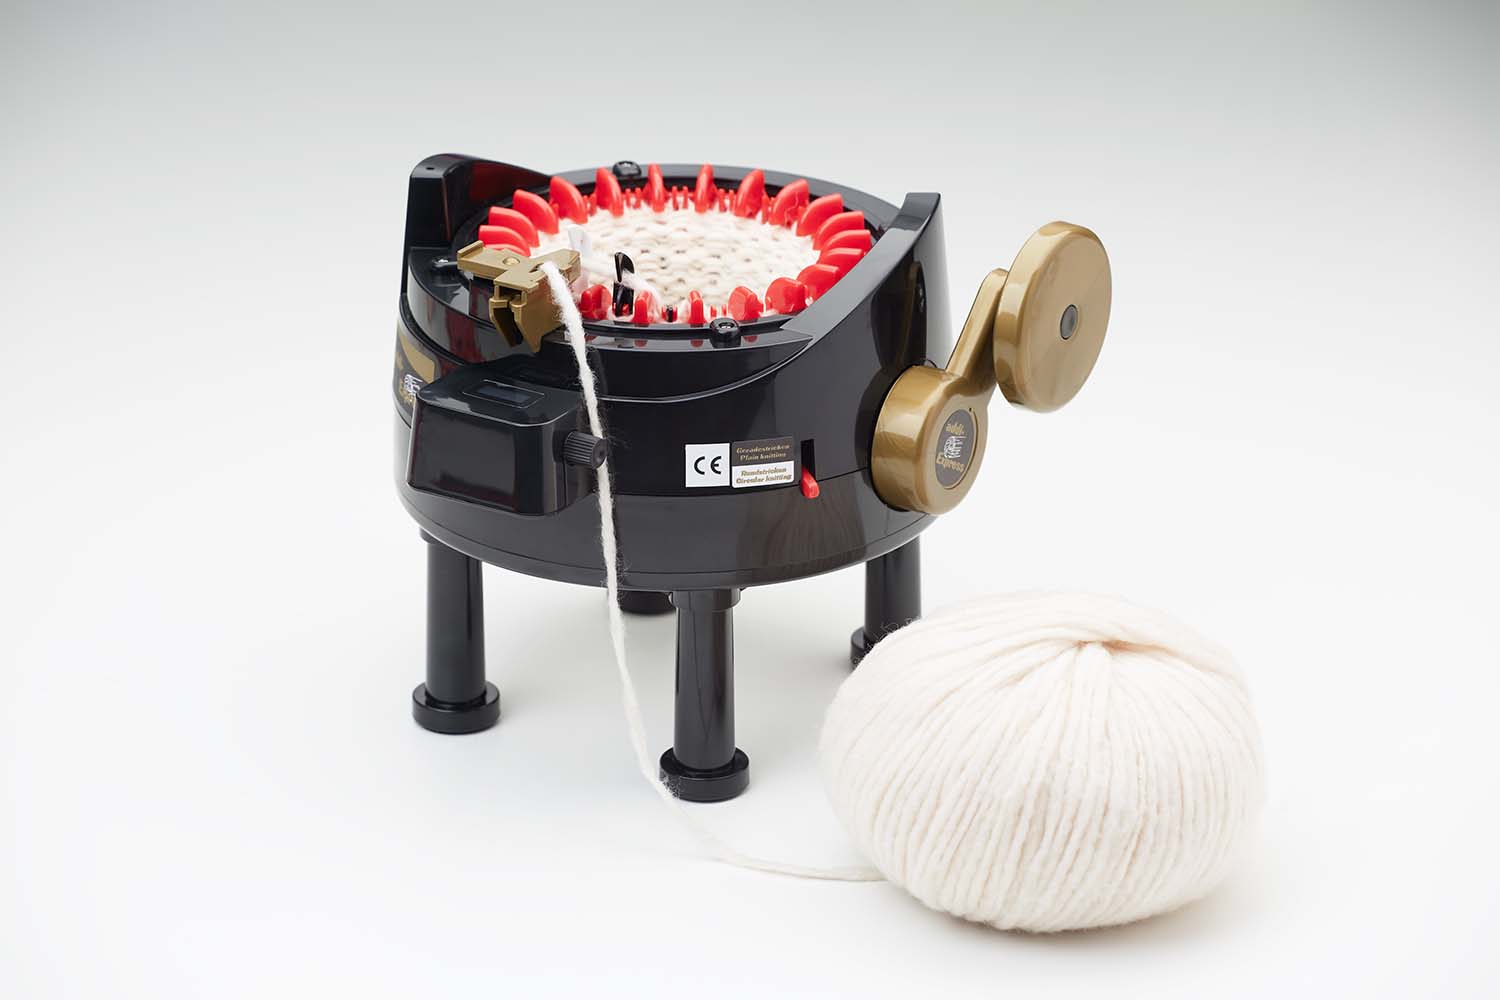 Addi Express Professional Knitting Machine - Small 15cm - 22